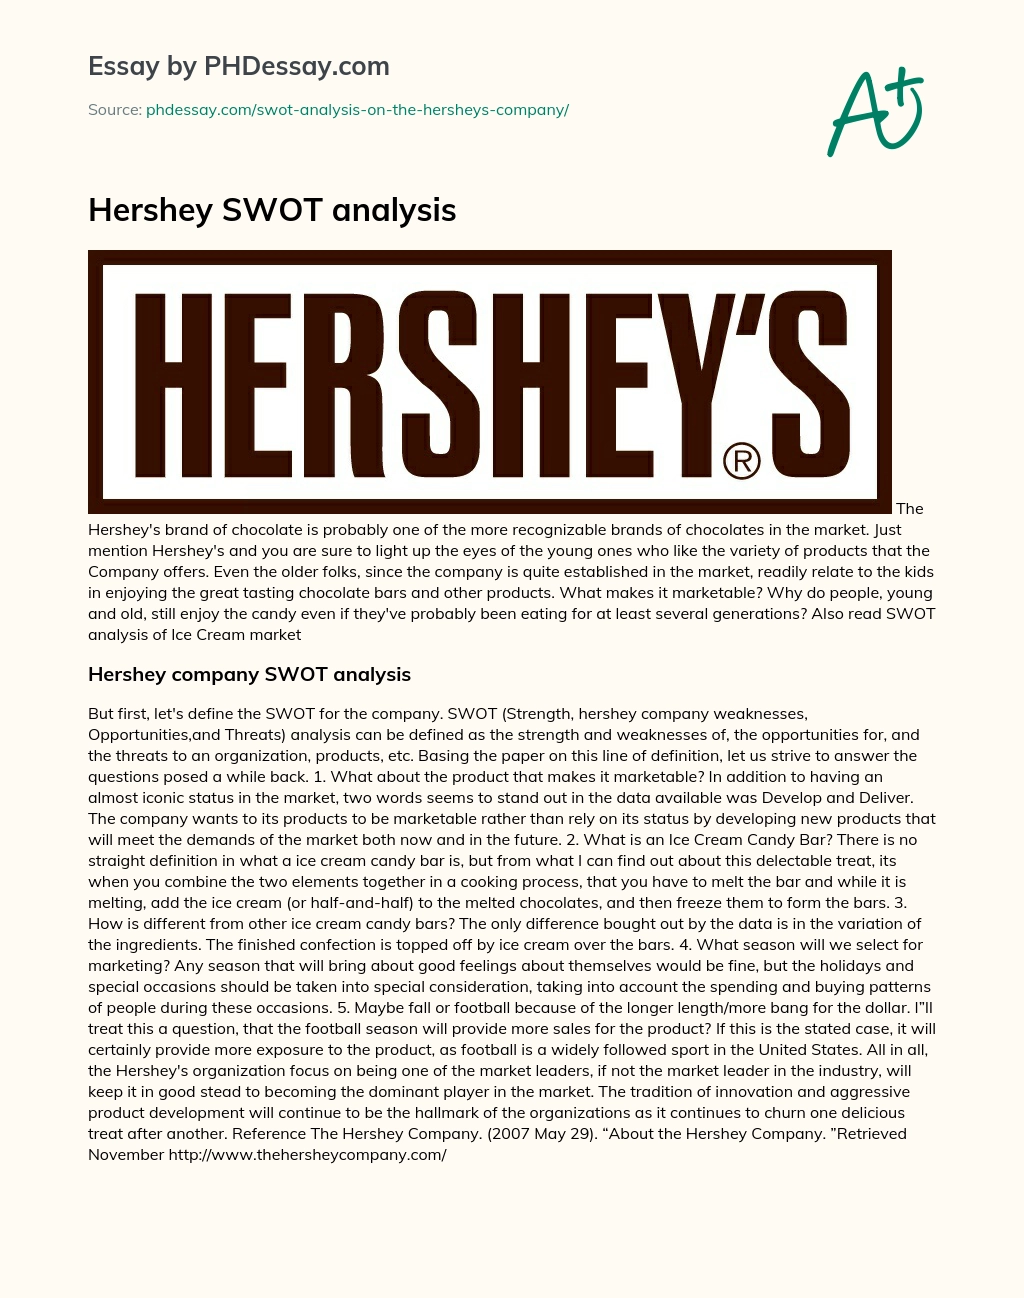 hershey swot analysis 2014